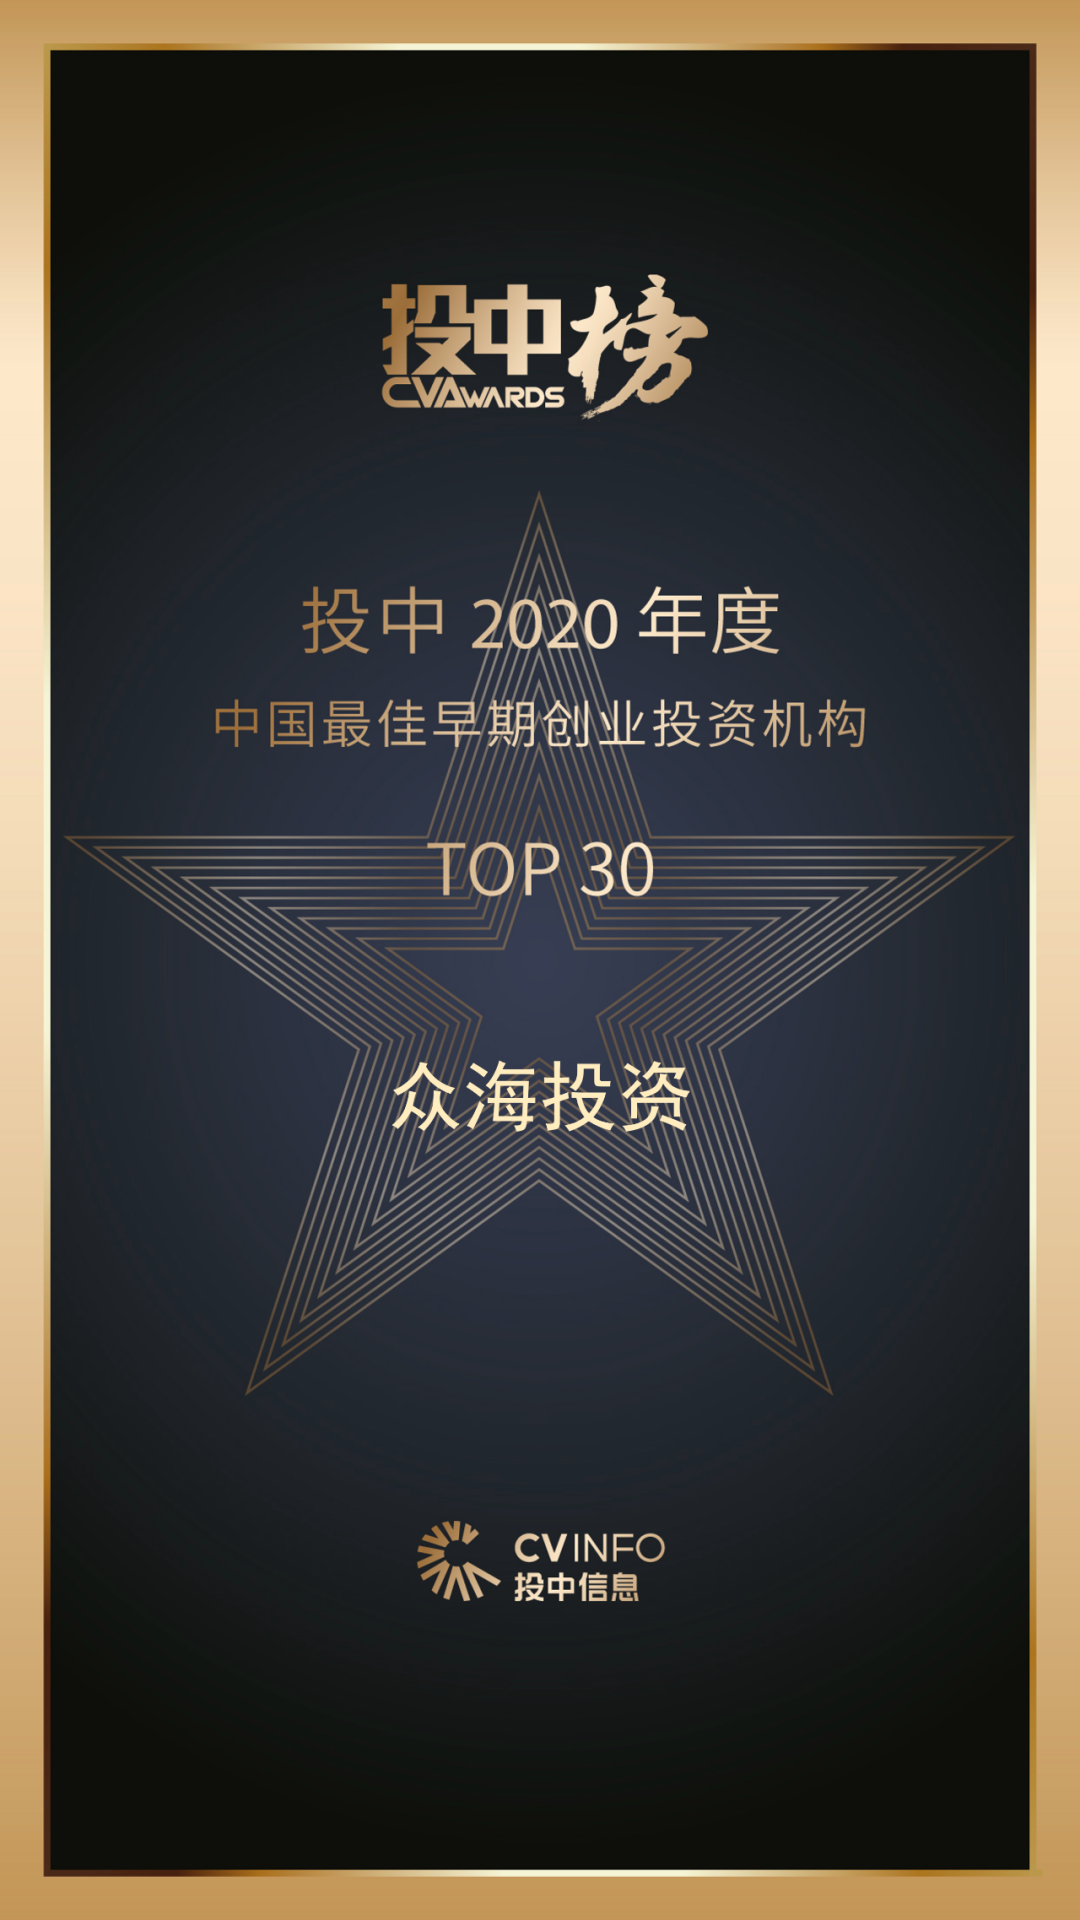 众海投资荣获投中“2020年度中国最佳早期创业投资机构TOP30”